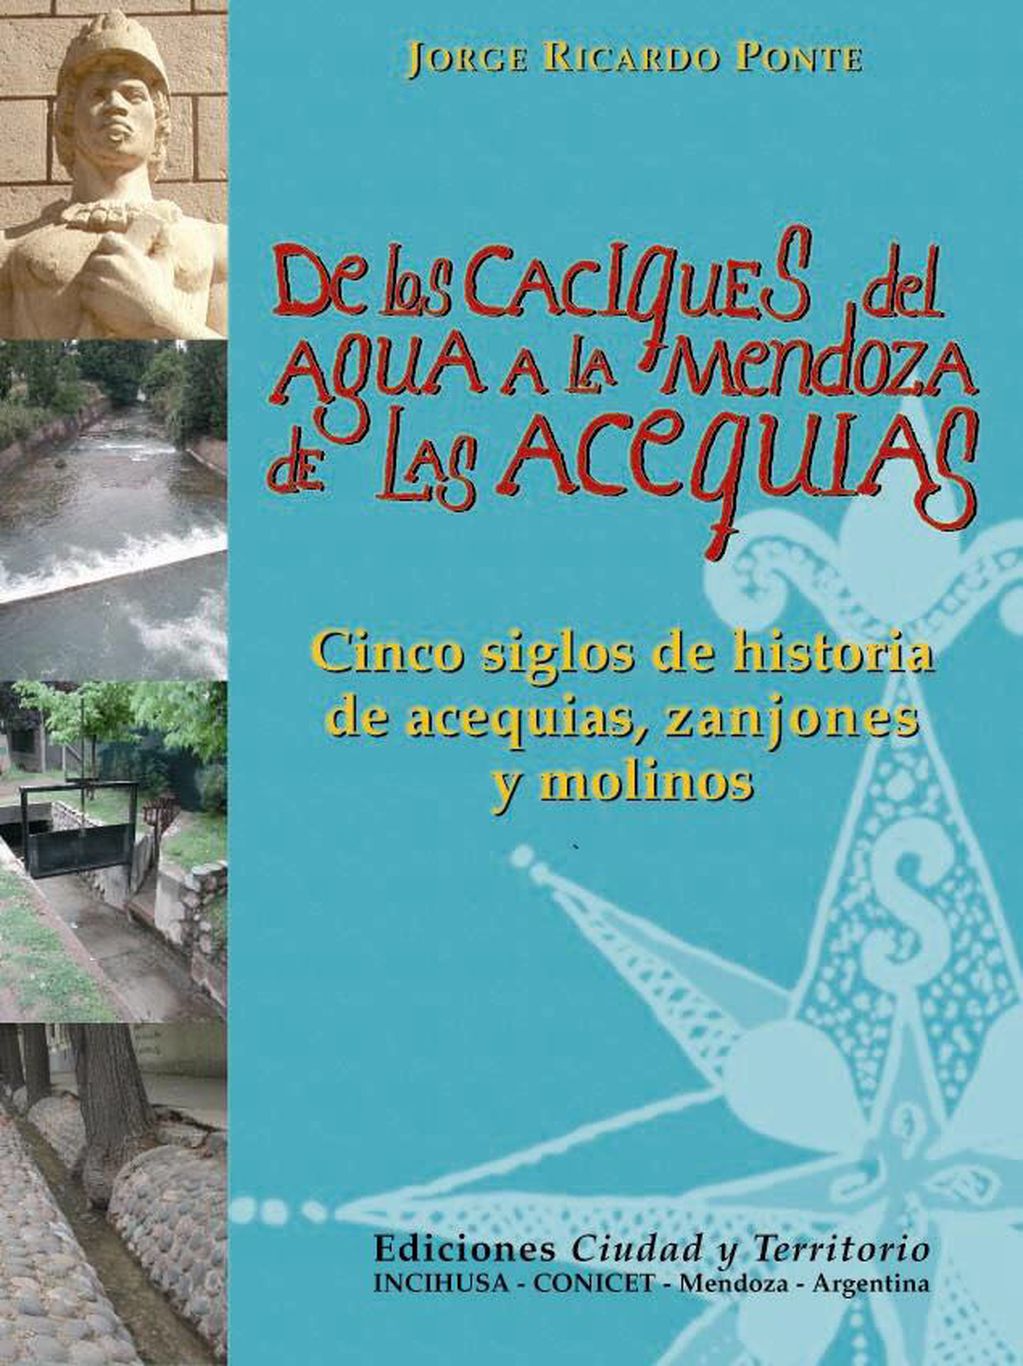 Tapa del libro del arquitecto Ponte "De los caciques del agua a la Mendoza de las acequias".